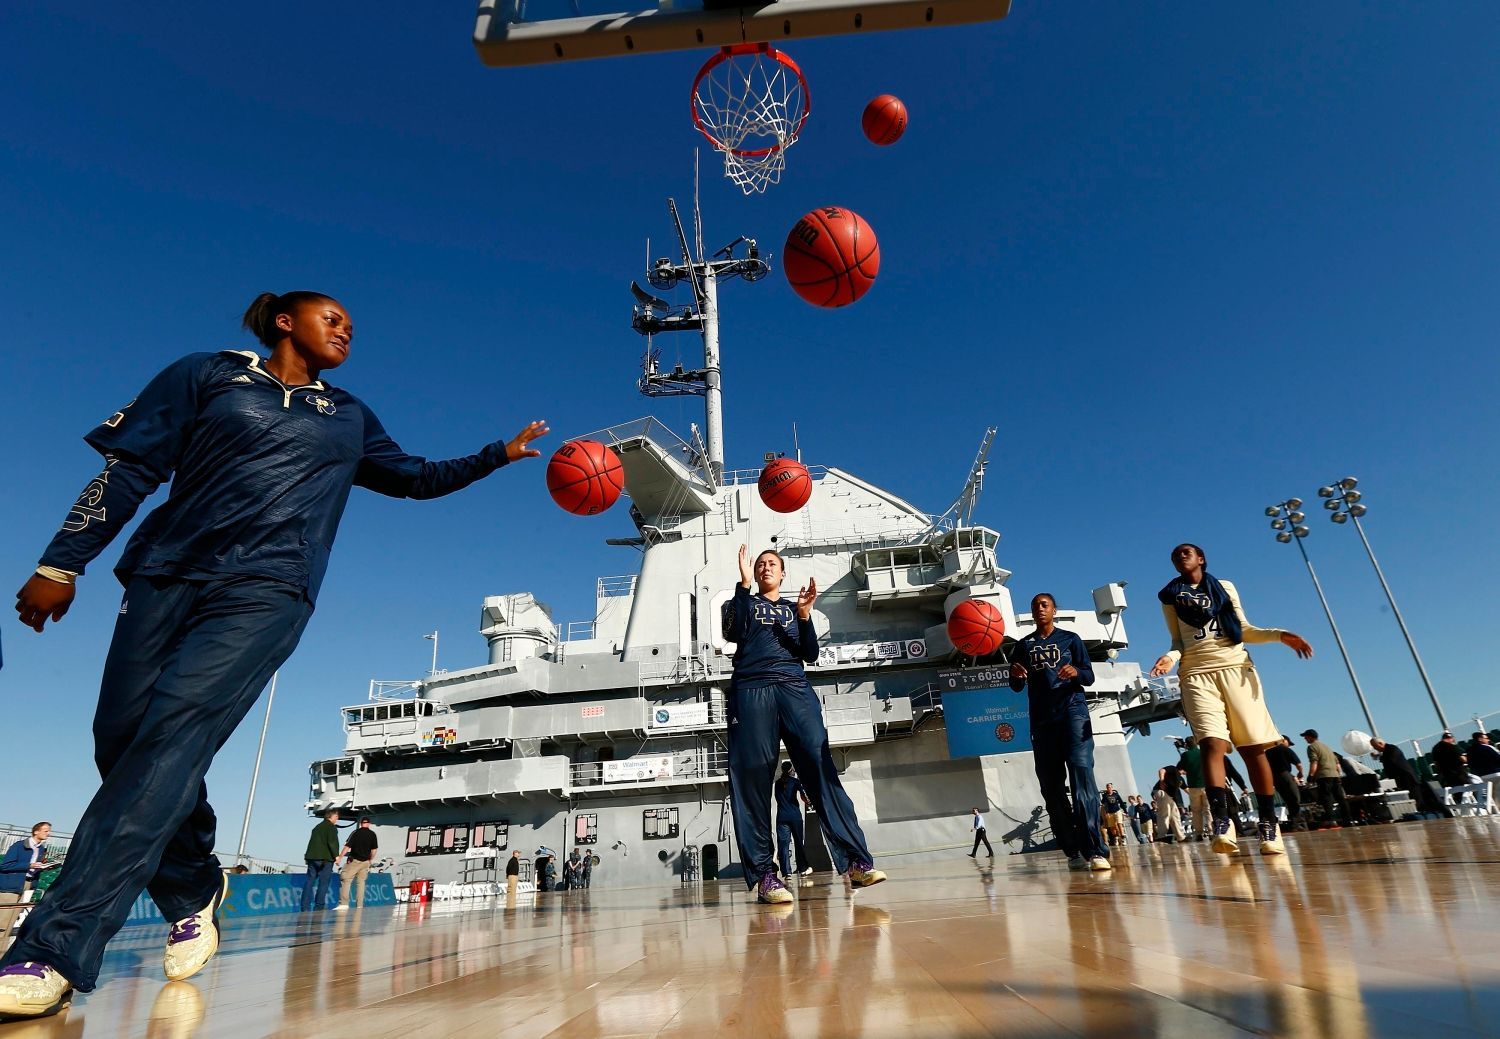 Basketbalisté amerických týmů hrají zápasy na palubě lodi U.S.S. Yorktown v Cherlestonu